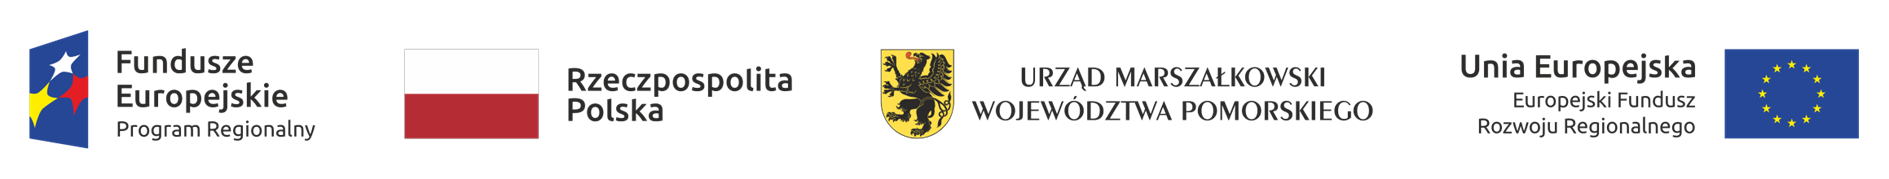 loga: Funduszy Europejskich, Rzeczypospolitej Polskiej, Urzędu Marszałkowskiego Woj. Pomorskiego, UE